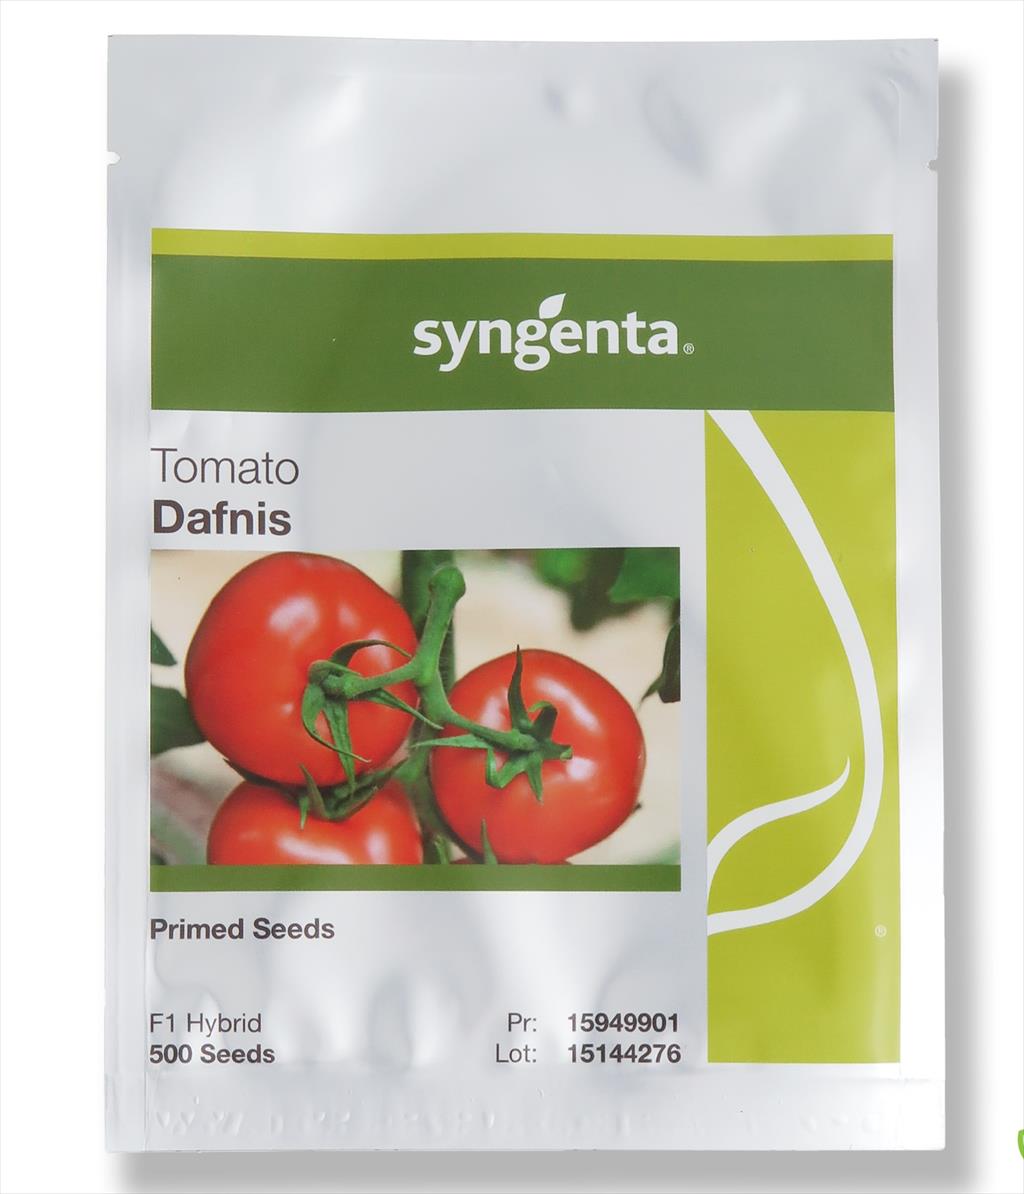 بذر گوجه گلخانه ای دافنیس محصول شرکت سینجنتا سوئیس بوده که در پاکت های 500 عددی به بازار عرضه می گردد. گوجه دافنیس دارای تیپ میوه درشت یا اصطلاحا بیف  industry agriculture agriculture